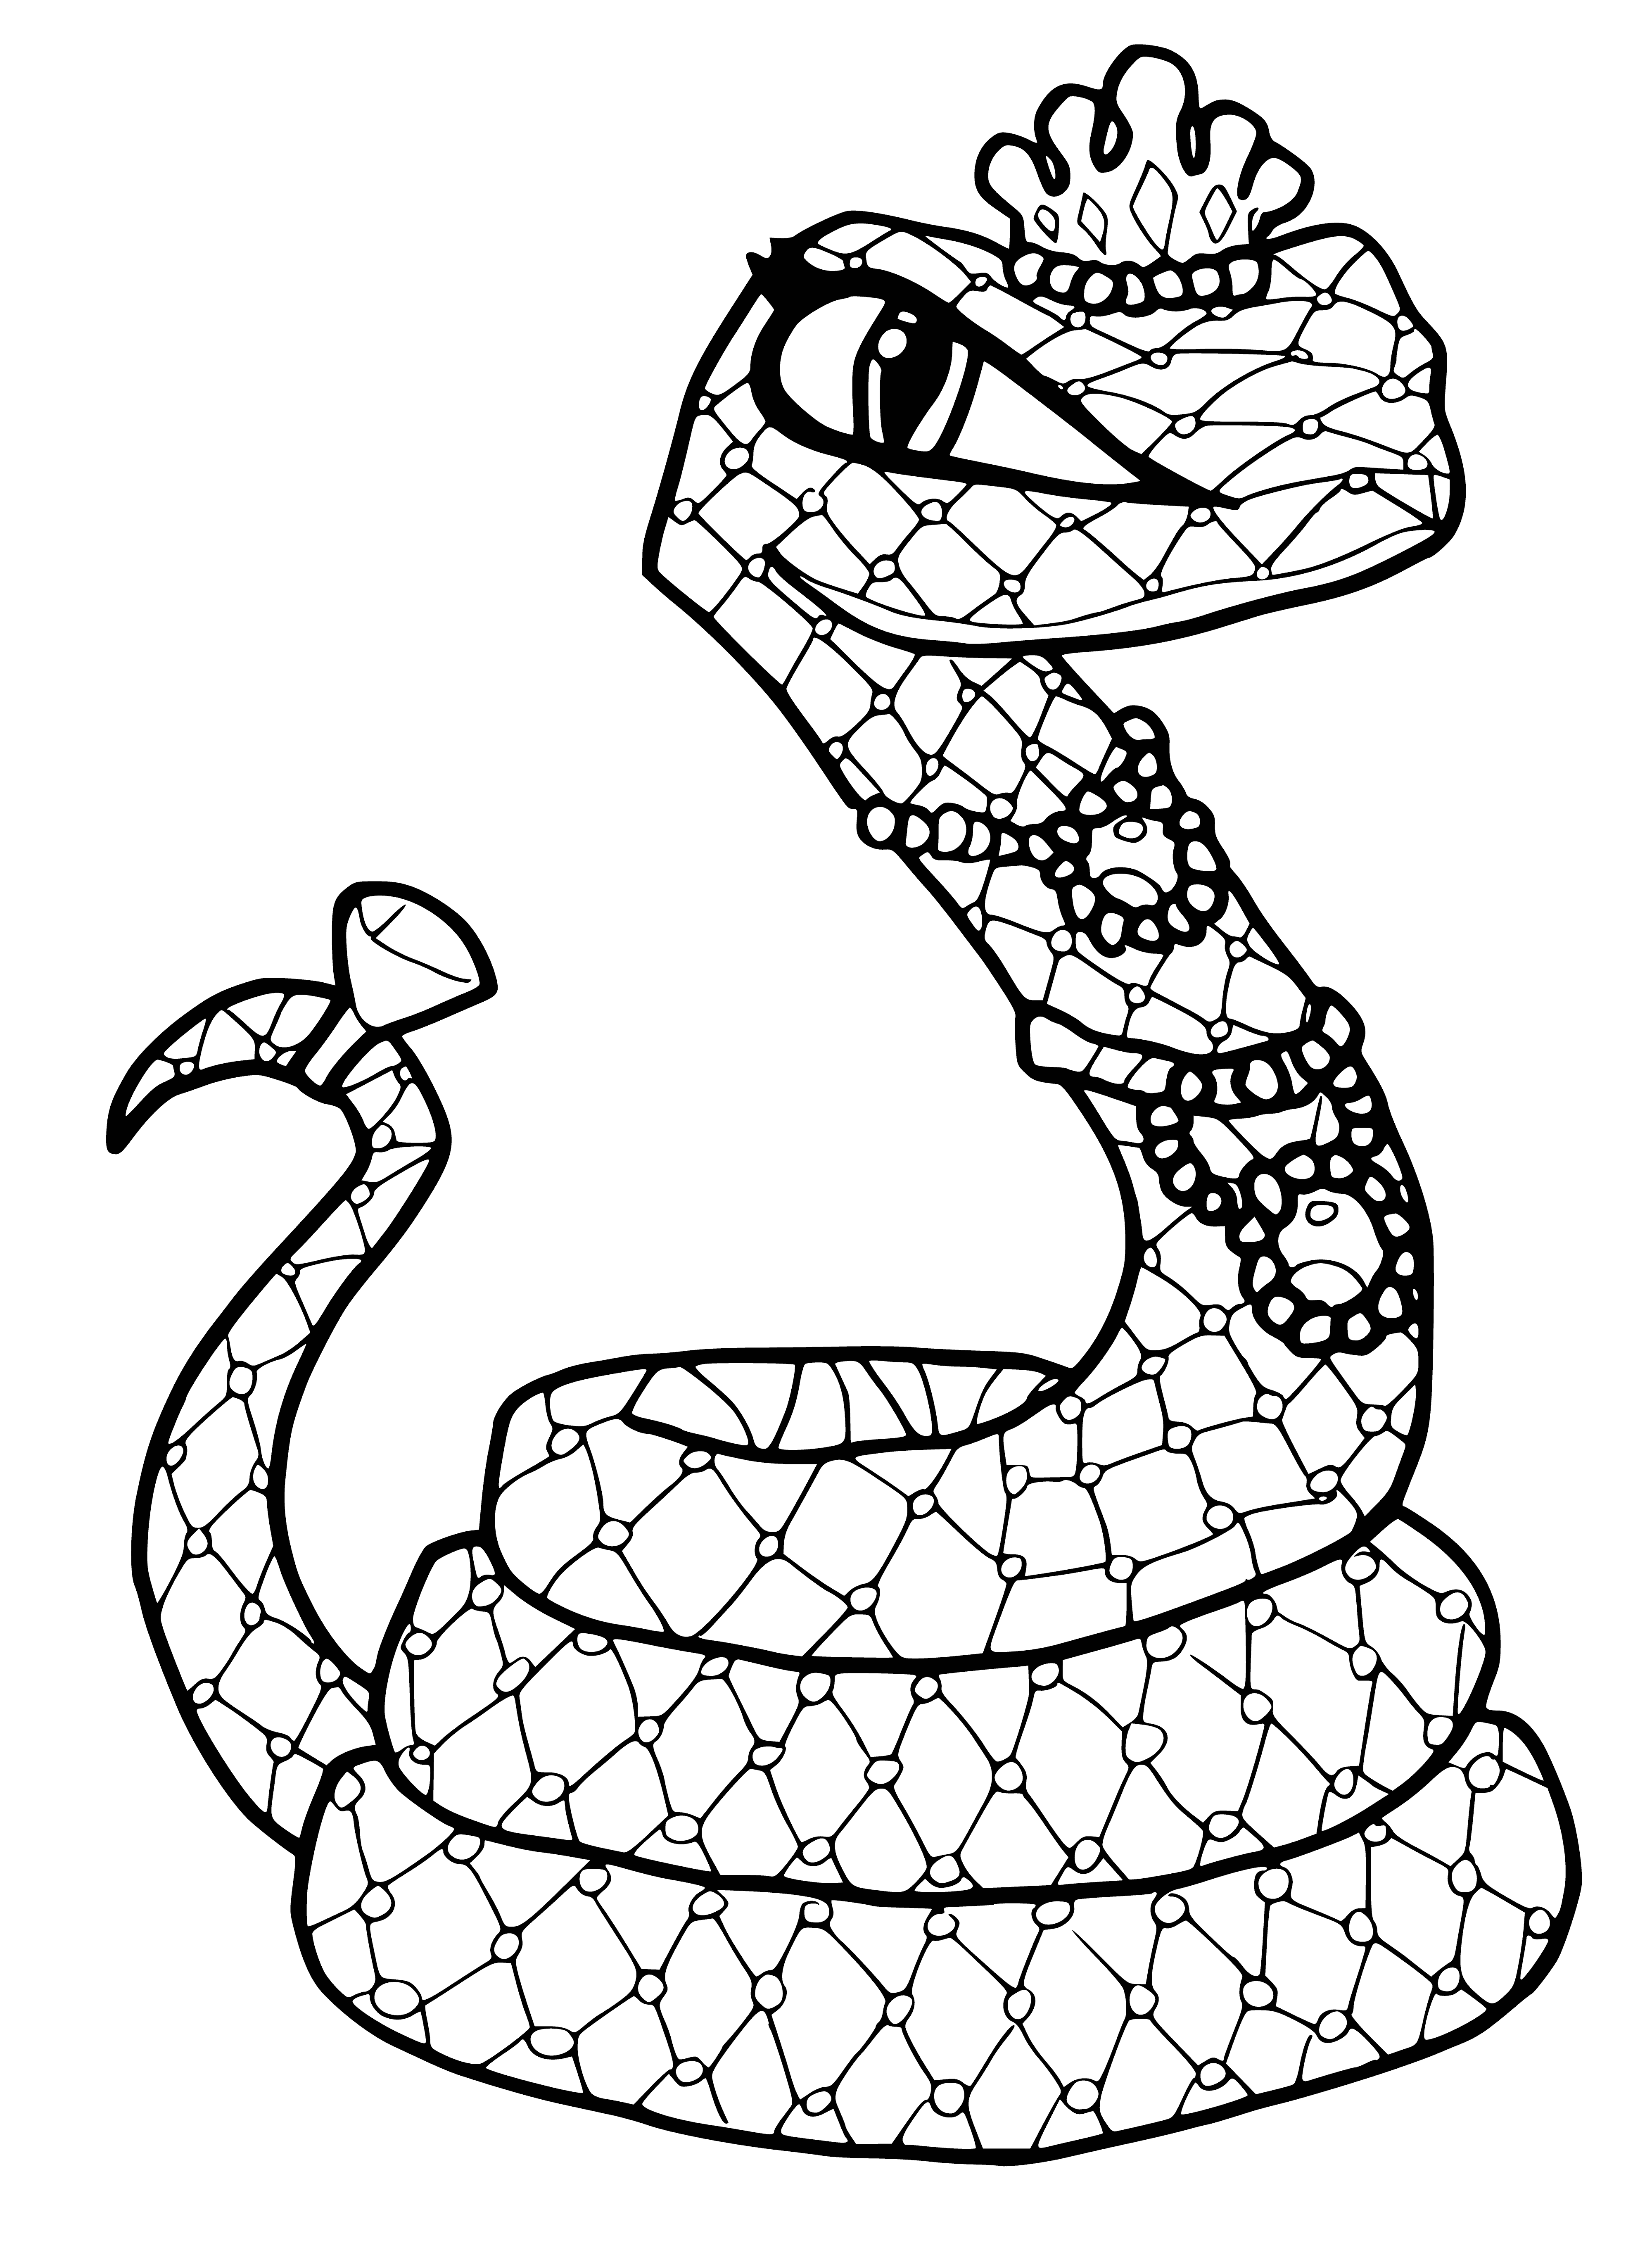 Раскраски змей распечатать. Клео Монстер Хай со змеей. Змея раскраска.